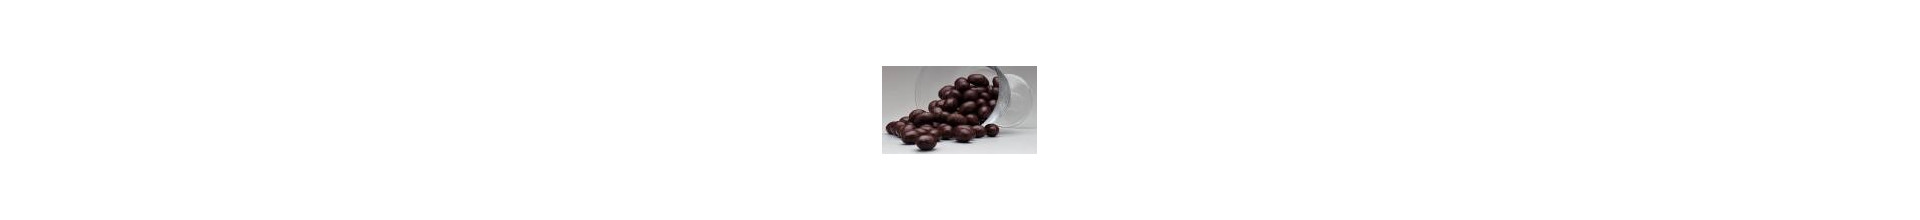 Amêndoas Confeitadas Chocolate ao Leite – Empório das Amêndoas